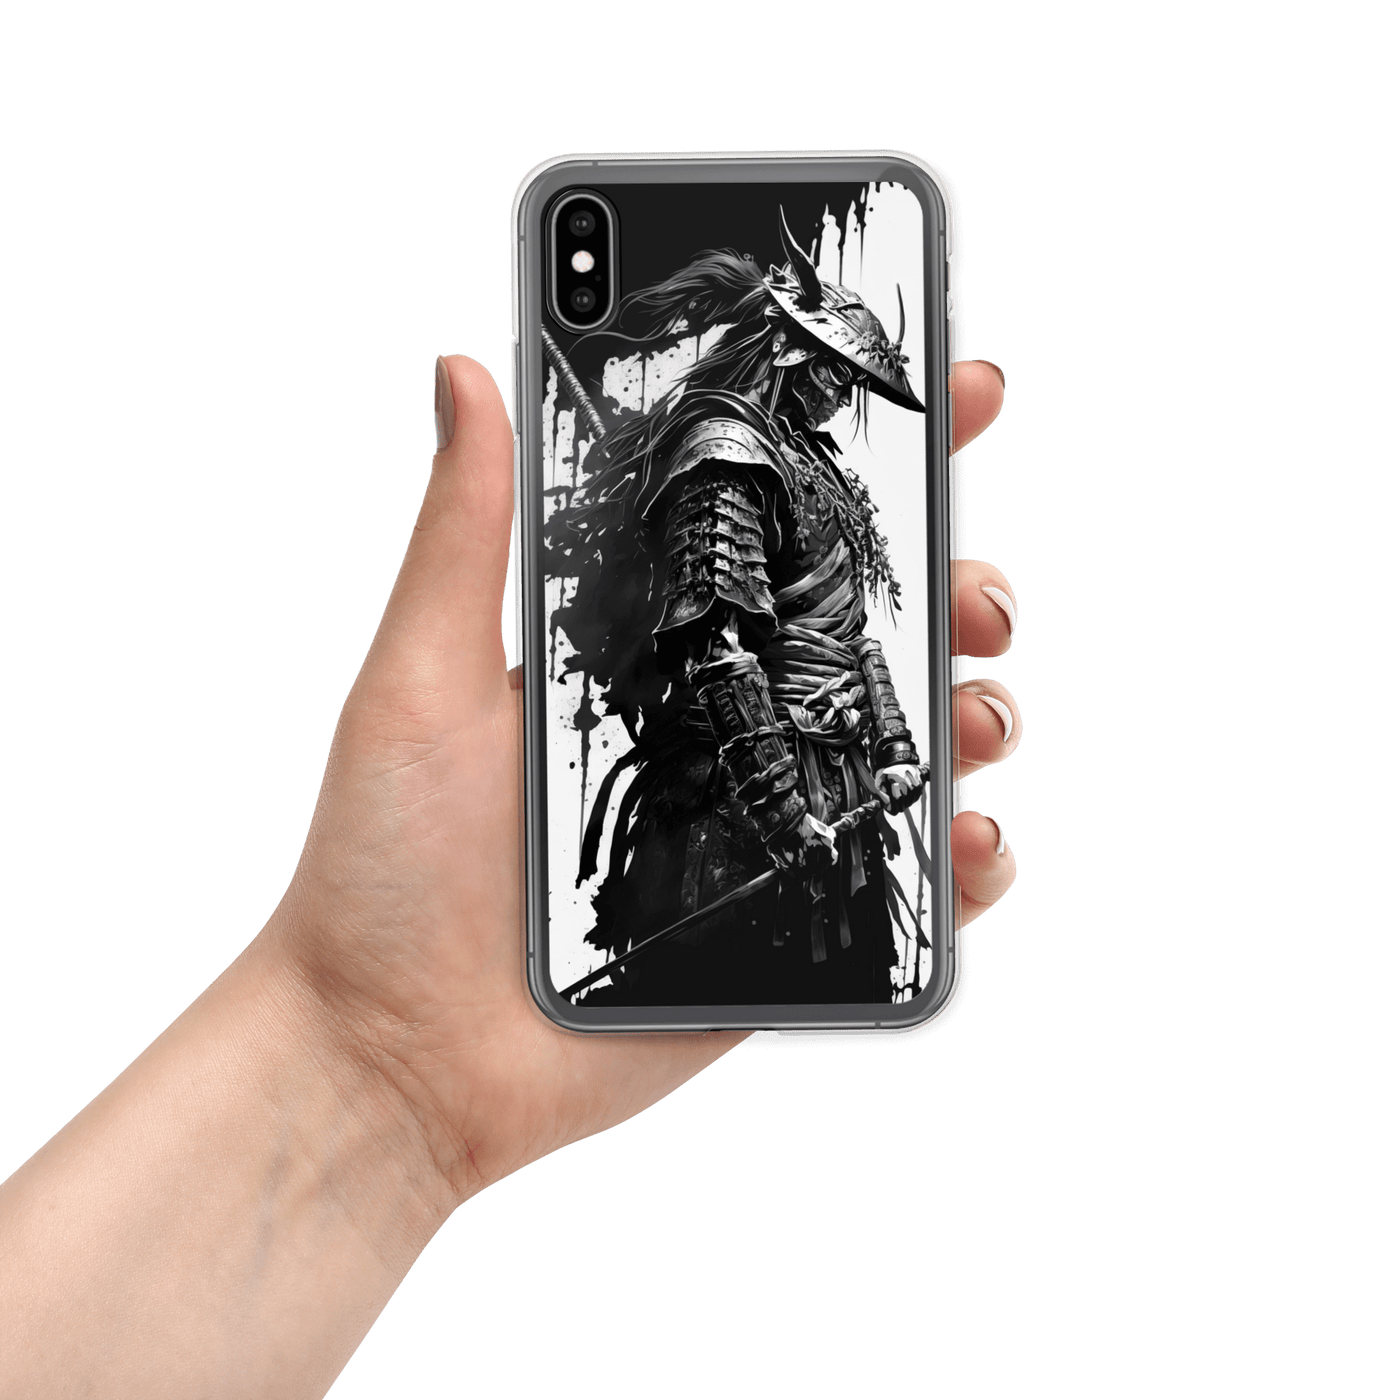 Clear Mobile Case for iPhone® | Samurai 4 Black'n White Japanese Art